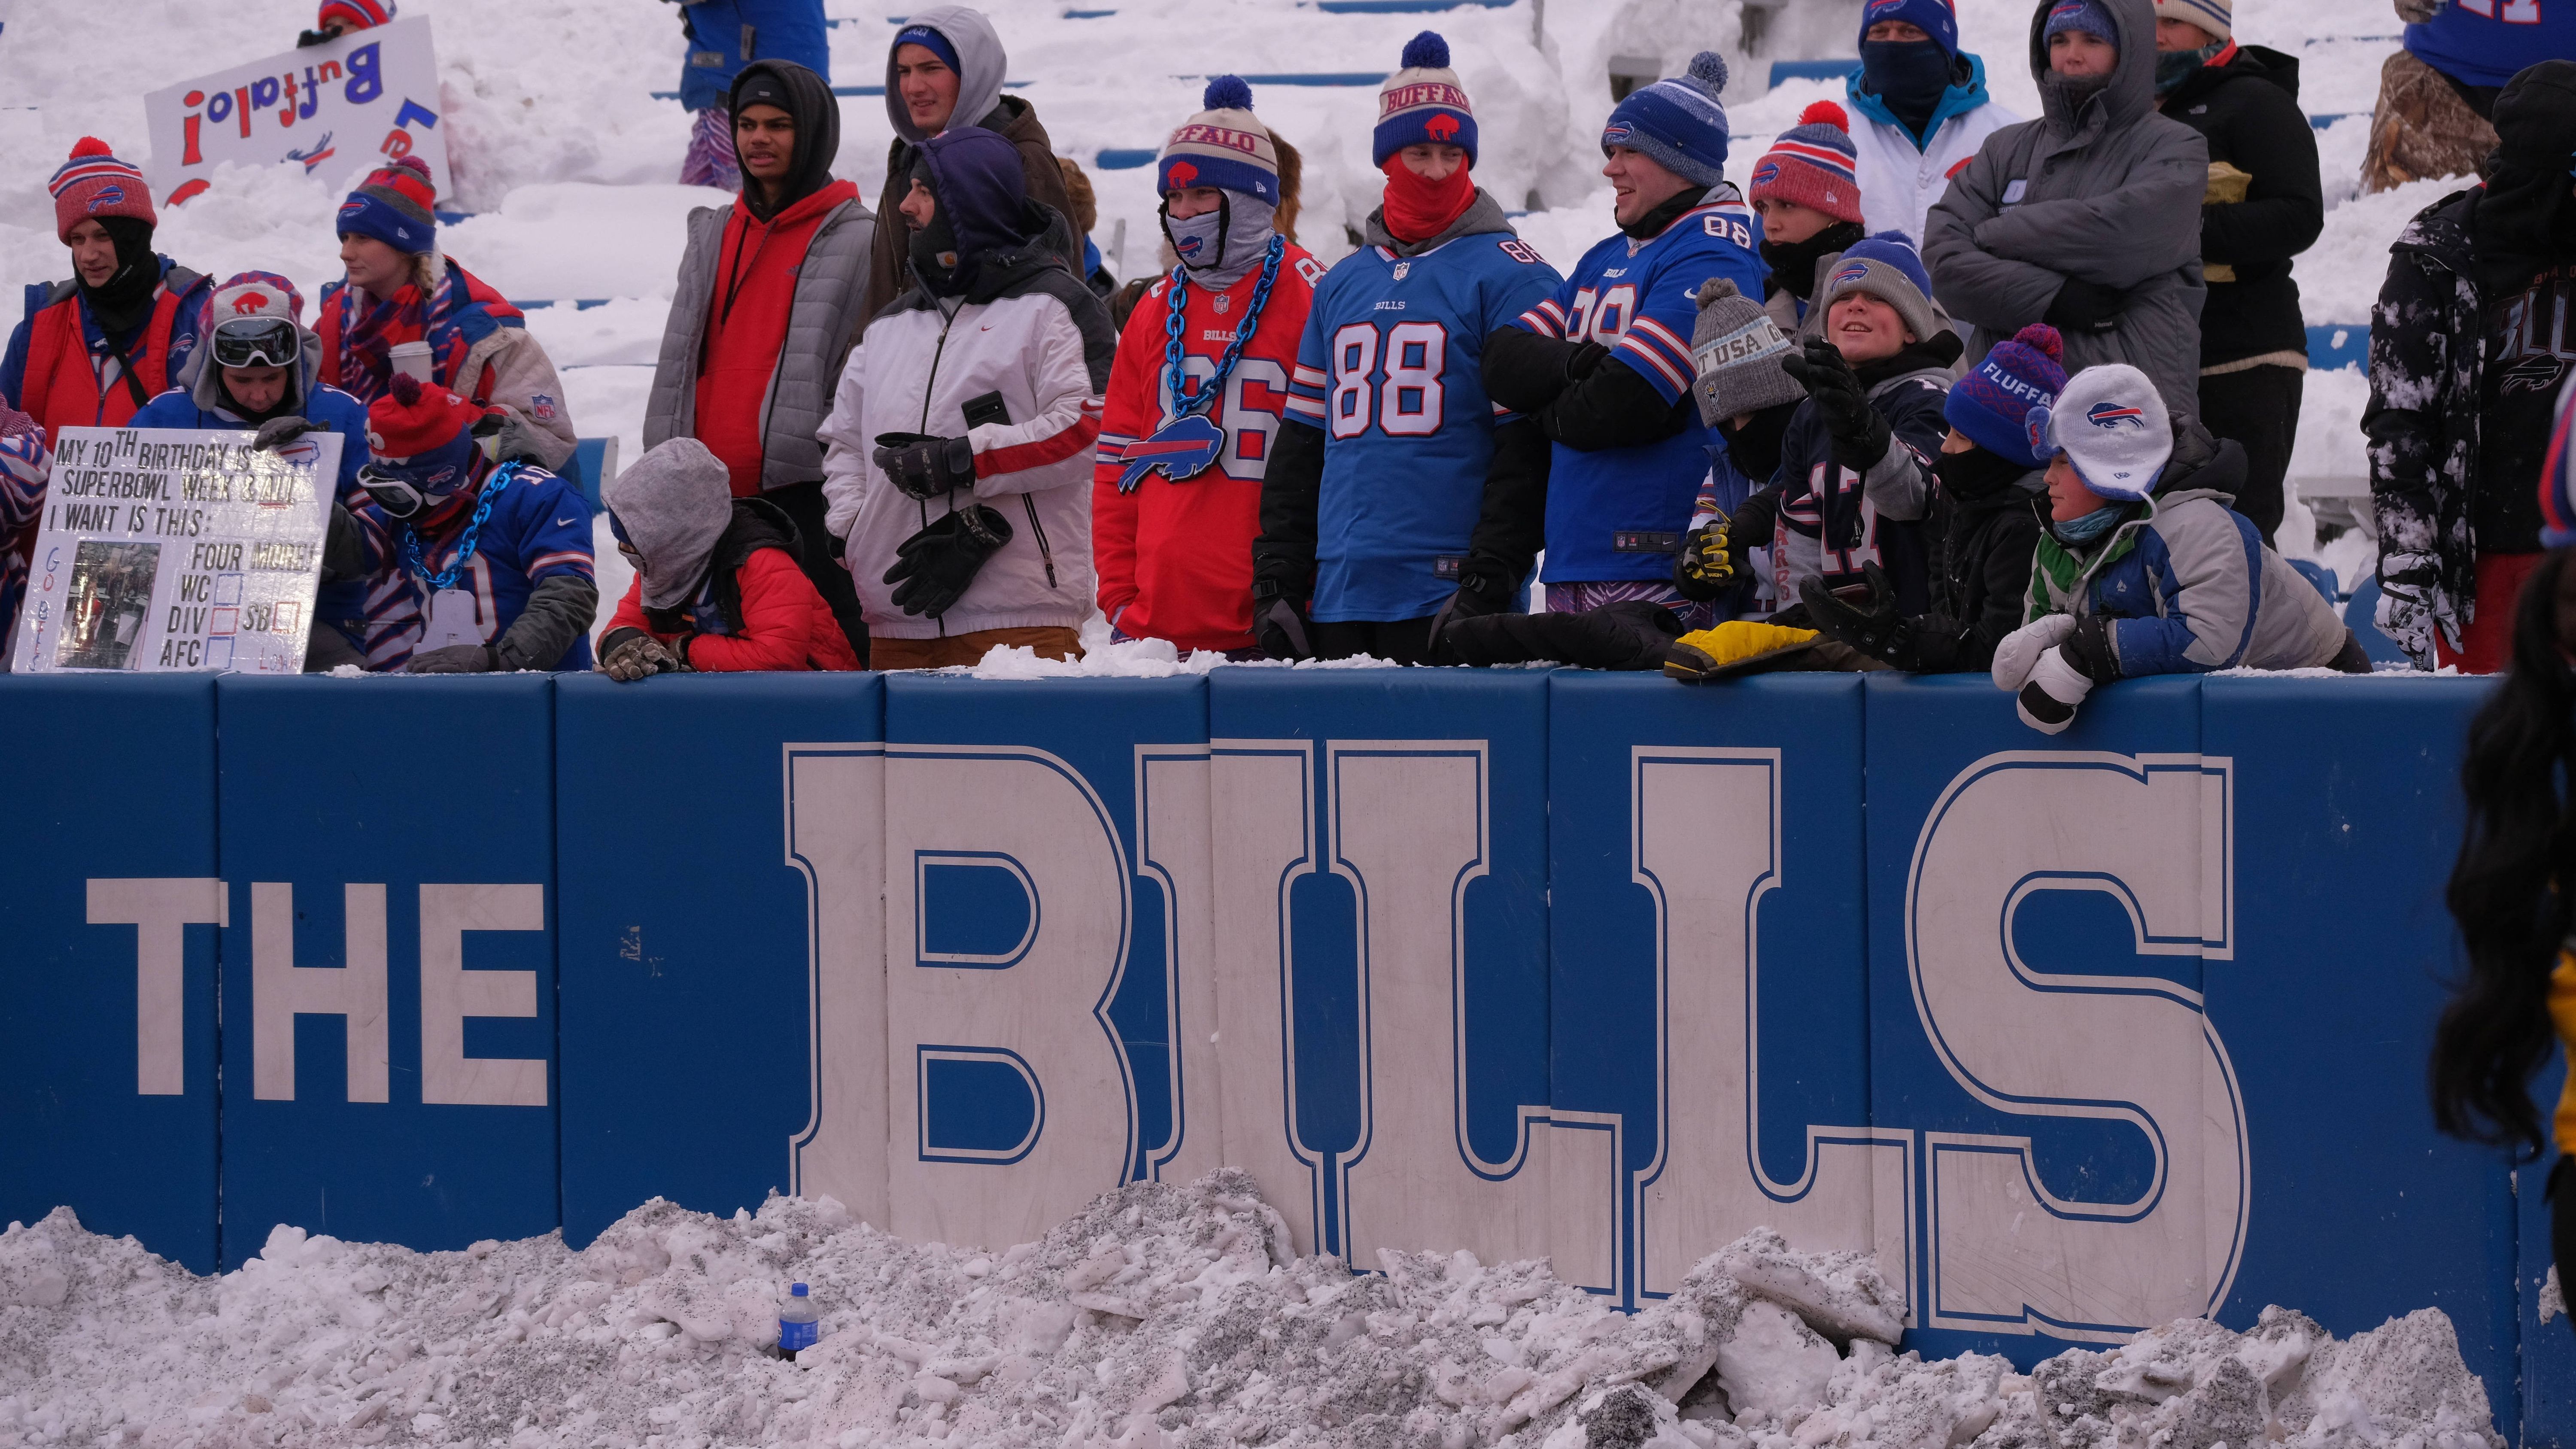 <strong>Gewinner: Fans der Buffalo Bills</strong><br>Wegen des Kälteeinbruchs in weiten Teilen der USA musste das Spiel der Bills gegen die Steelers von Sonntag auf Montag verschoben werden. Dass es überhaupt stattfinden konnte, war vor allem den Fans der Bills zu verdanken. Sie schippten unermüdlich Schnee und machten so den Zugang zu den Zuschauerplätzen erst möglich. Der Lohn: 20 Dollar die Stunde, kaltes Bier und der Sieg ihres Teams.